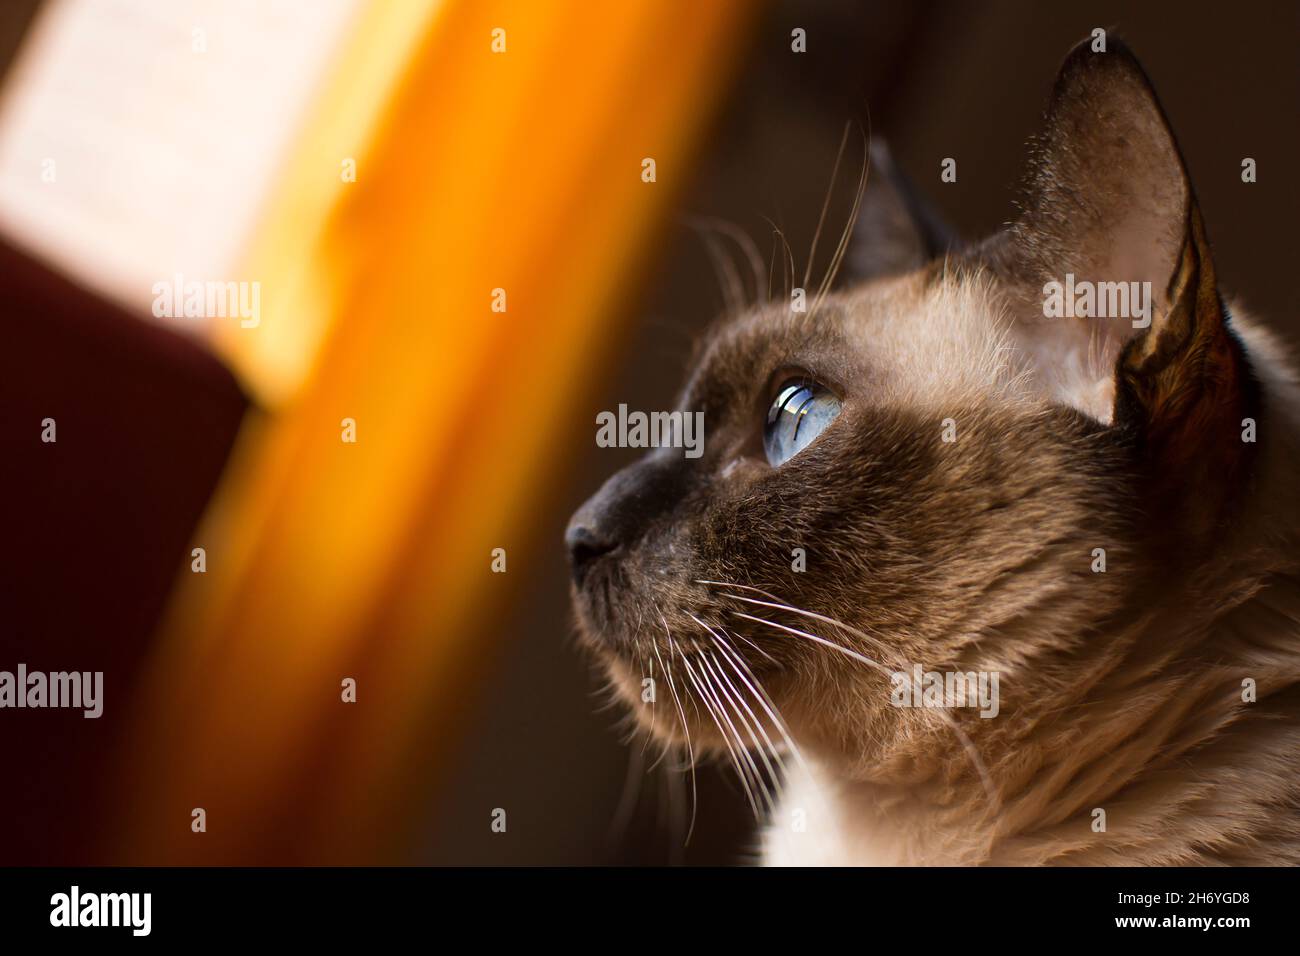 Gatto siamese che guarda a sinistra con gli occhi azzurri e lo sfondo giallo Foto Stock